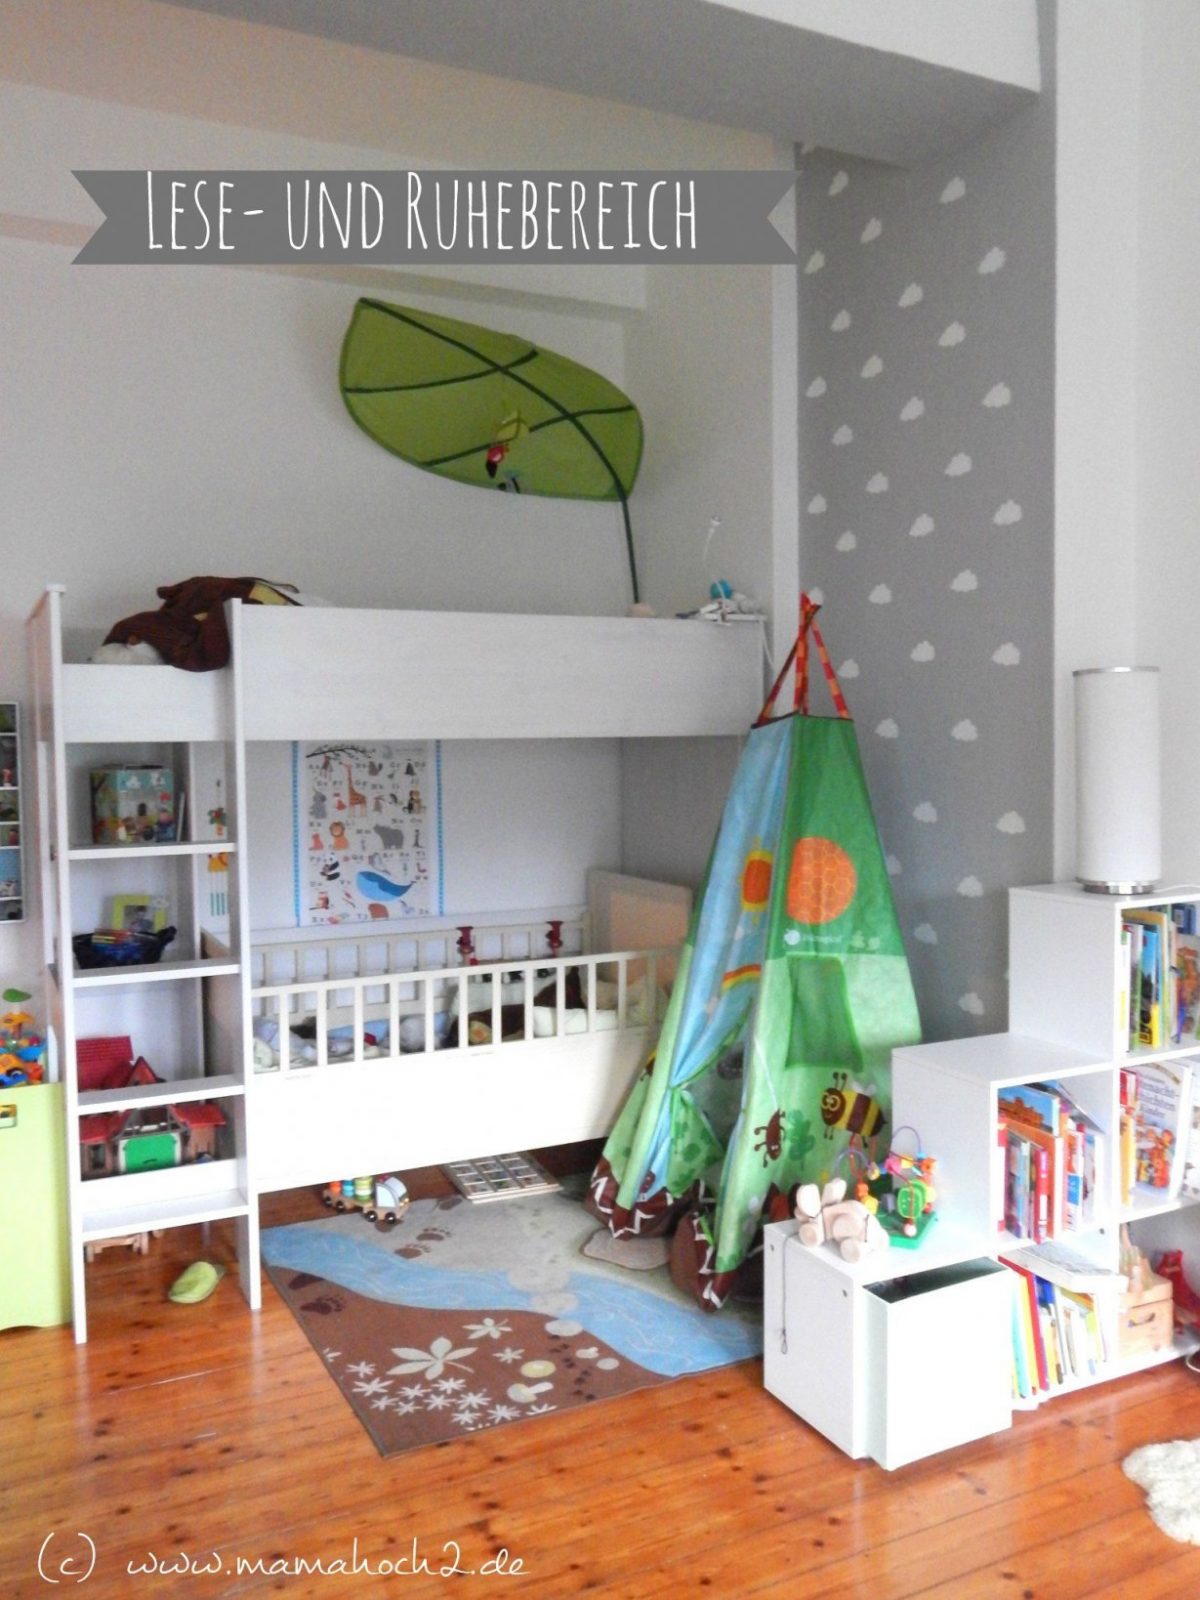 Kinderzimmer Für Zwei Lausebengel  Kinderzimmerideen  Interior von Kleines Kinderzimmer Für 2 Bild